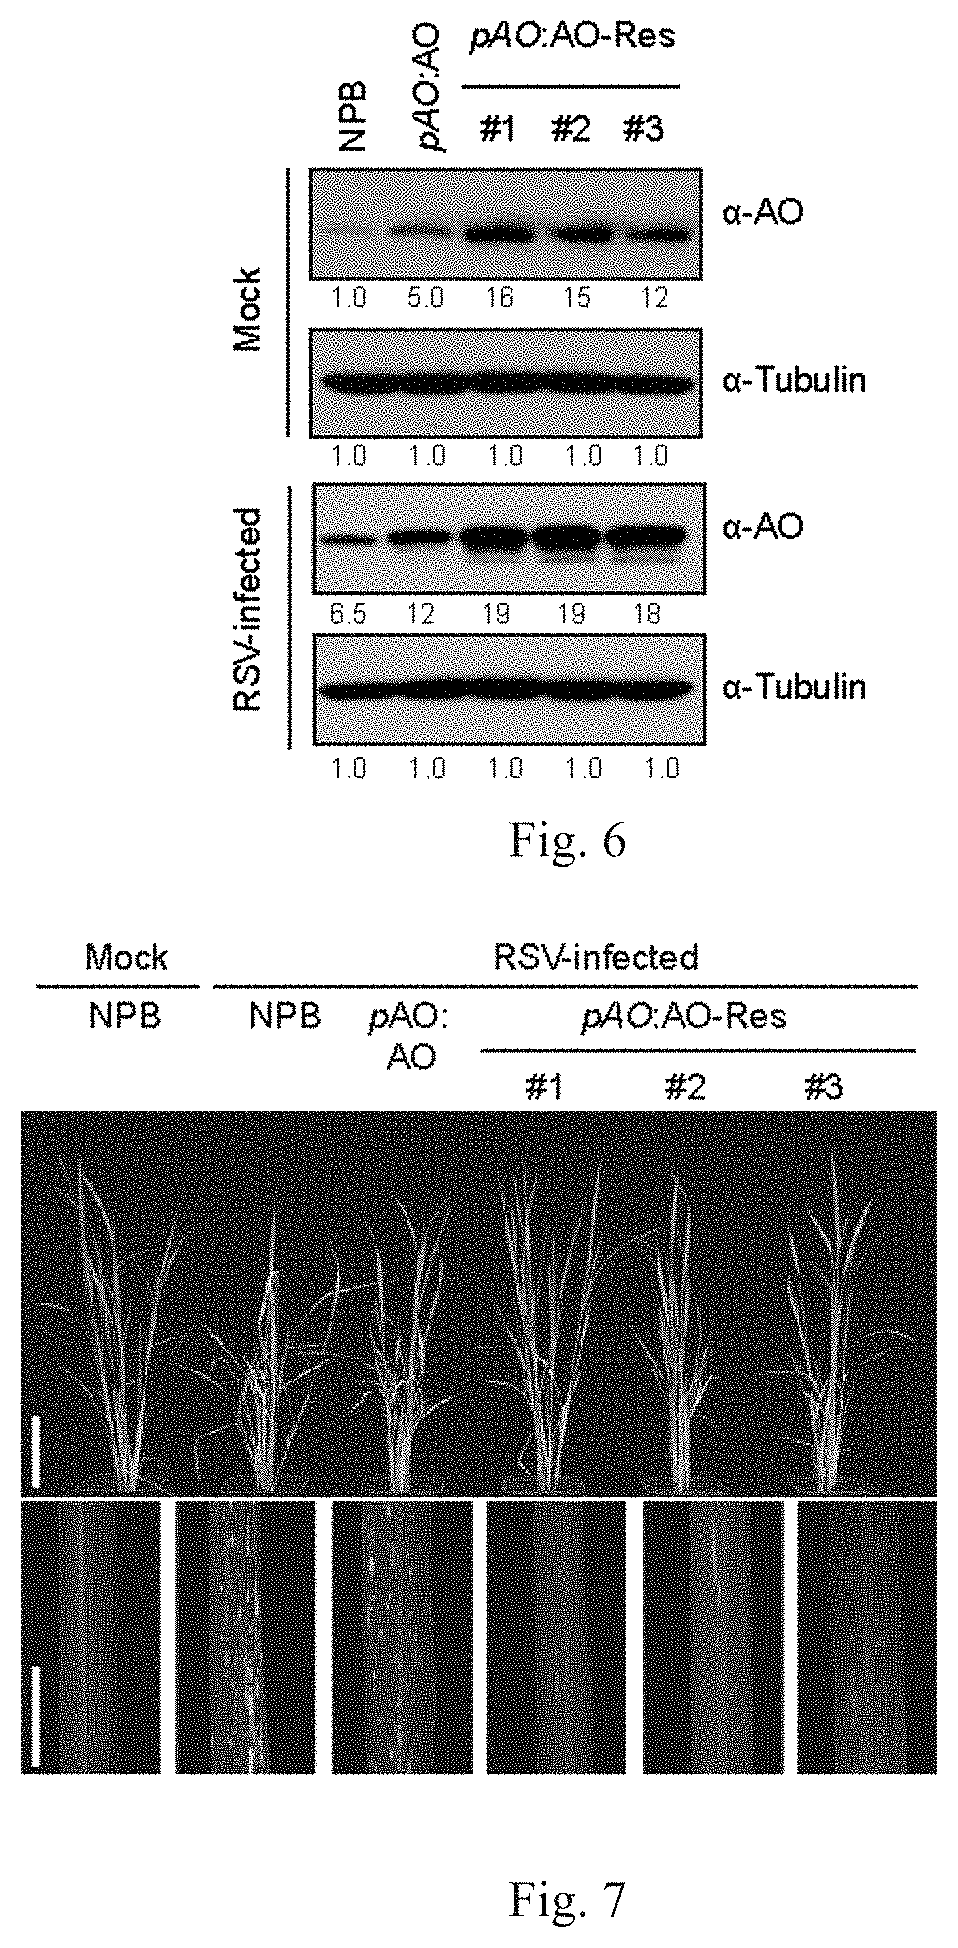 Application of osao gene for improving resistance of rice against rice stripe virus, rice black-streaked dwarf virus, or virus of same family